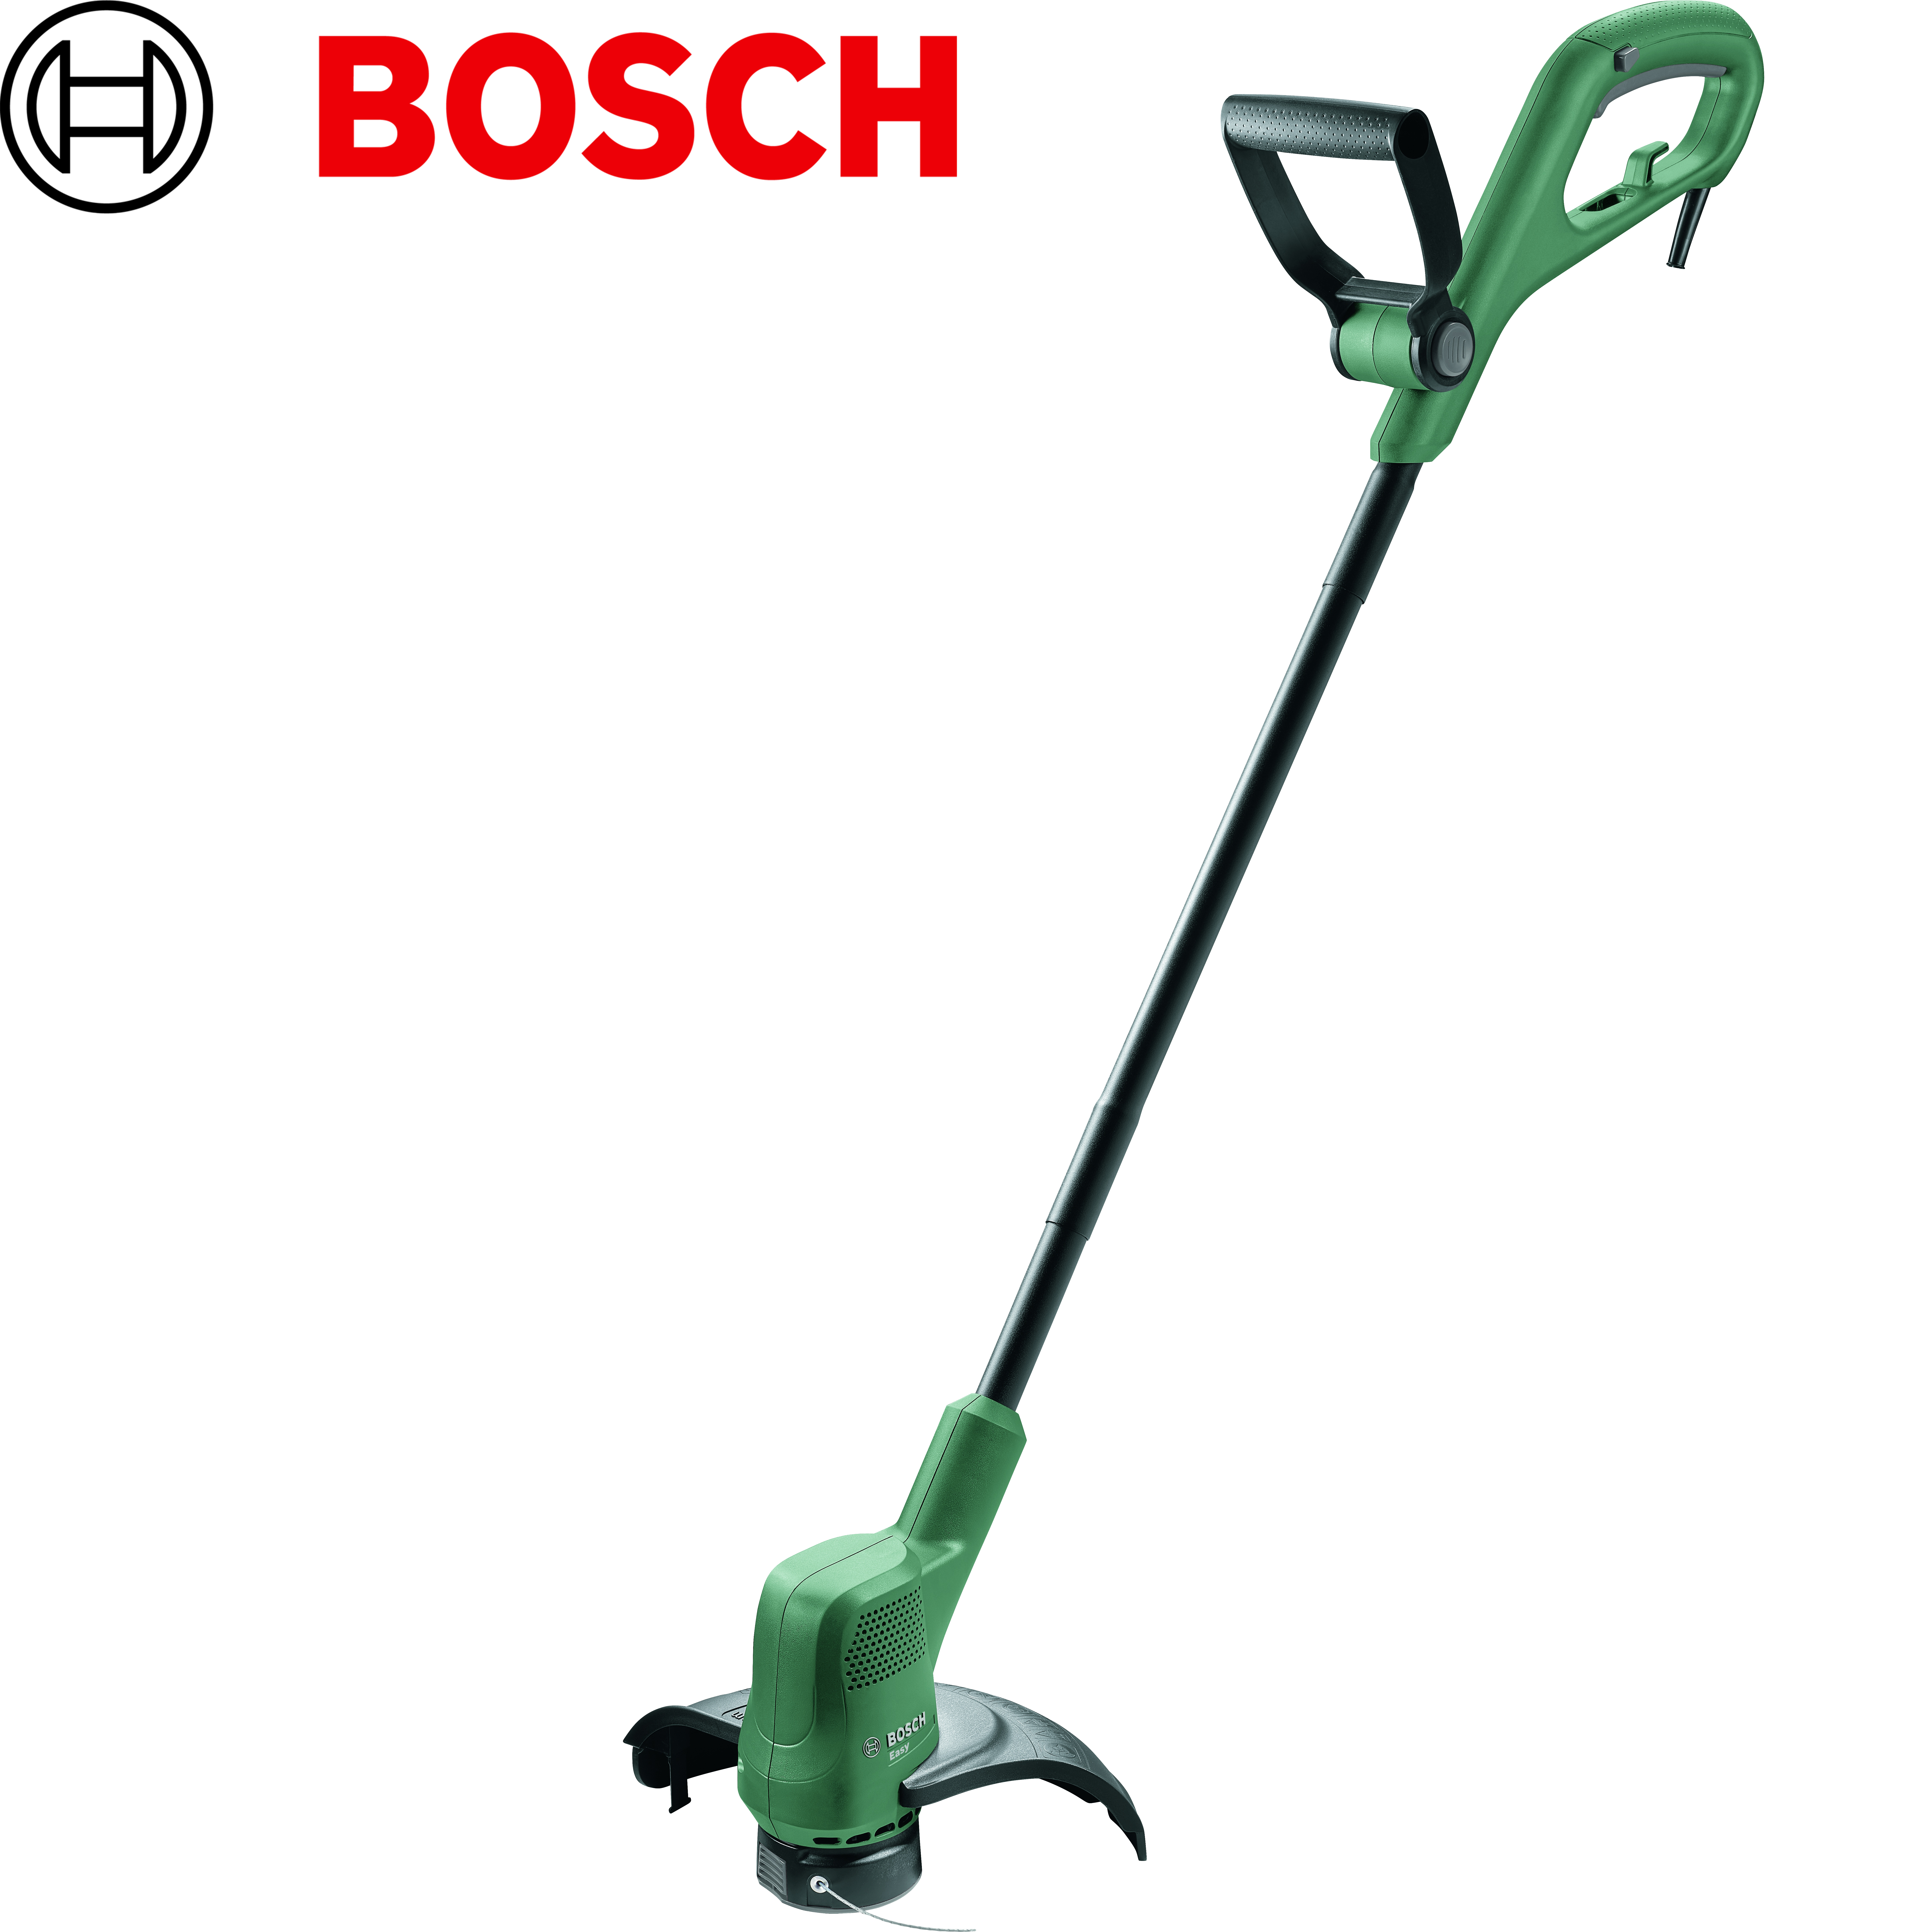 Триммер Bosch EASYGRASSCUT 18-230. Триммер электрический Bosch EASYGRASSCUT 23, 0 600 8c1 h01. Аккумуляторный триммер бош 26-18. Риммер для травы Bosch EASYGRASSCUT 26 06008c1j01.